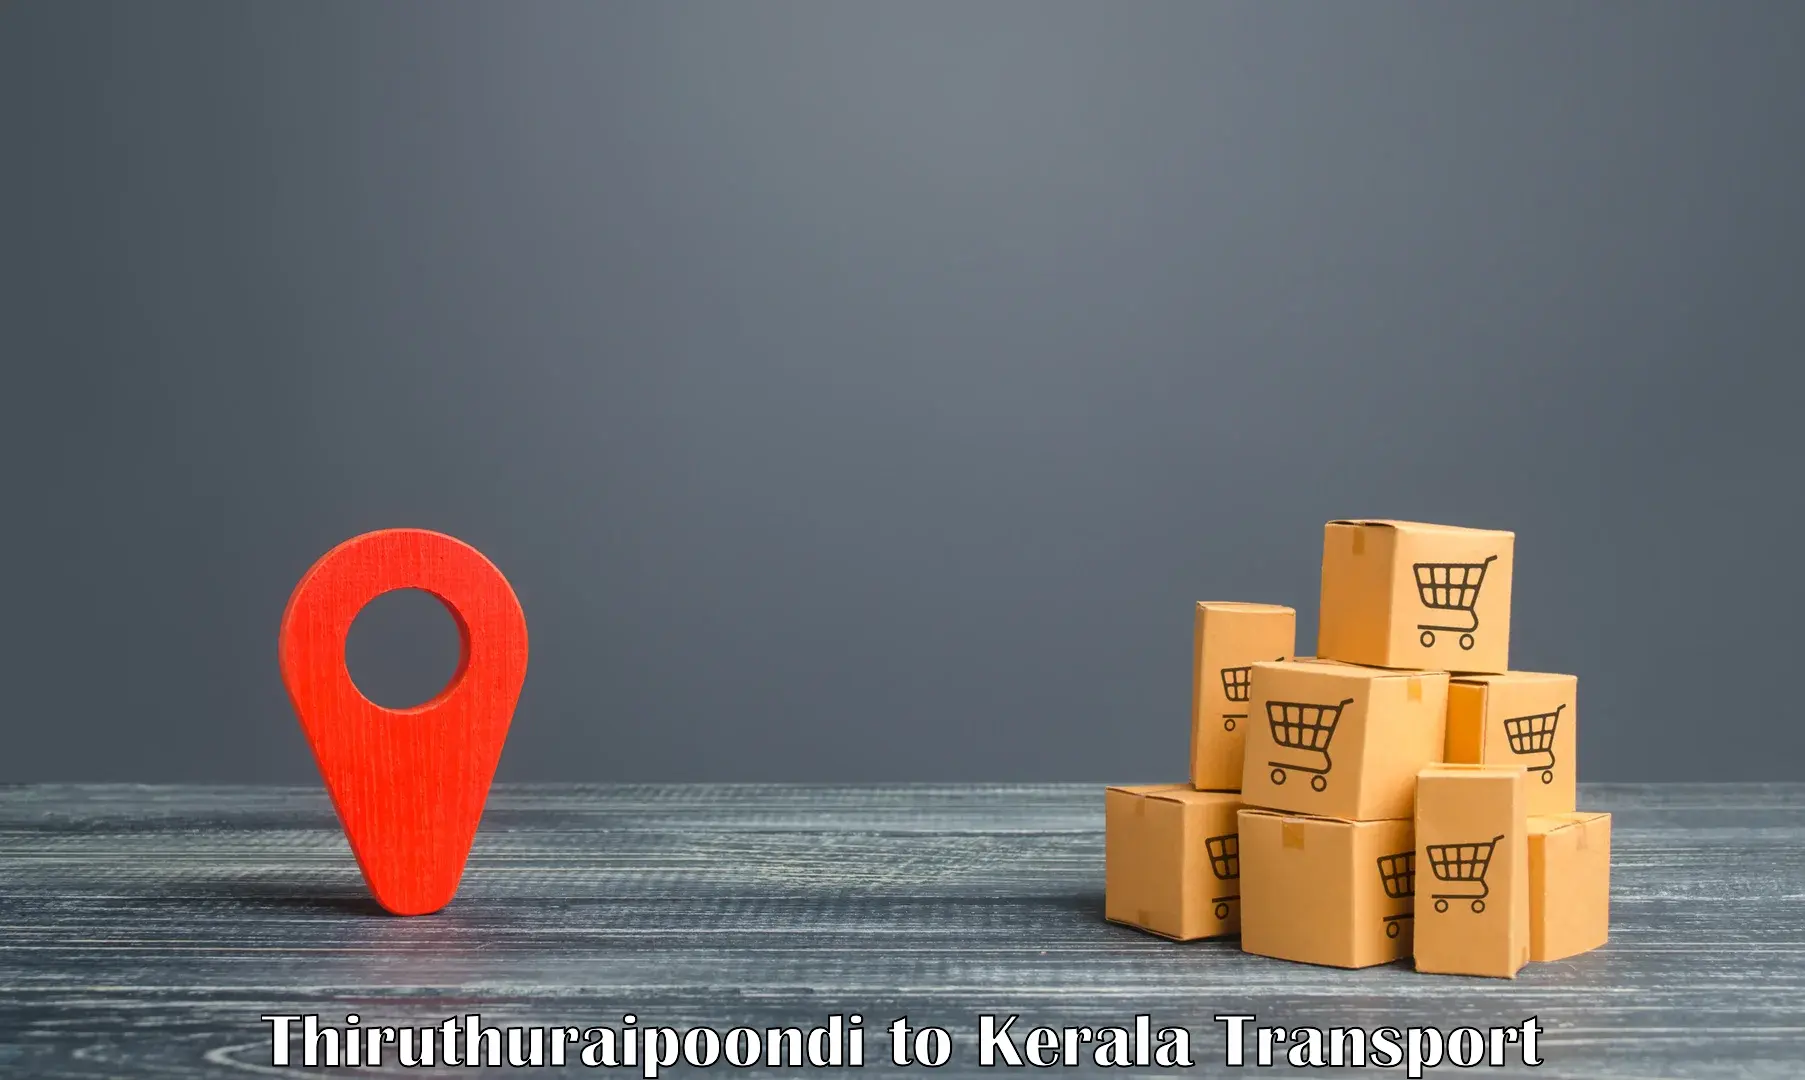 Air freight transport services Thiruthuraipoondi to IIIT Kottayam